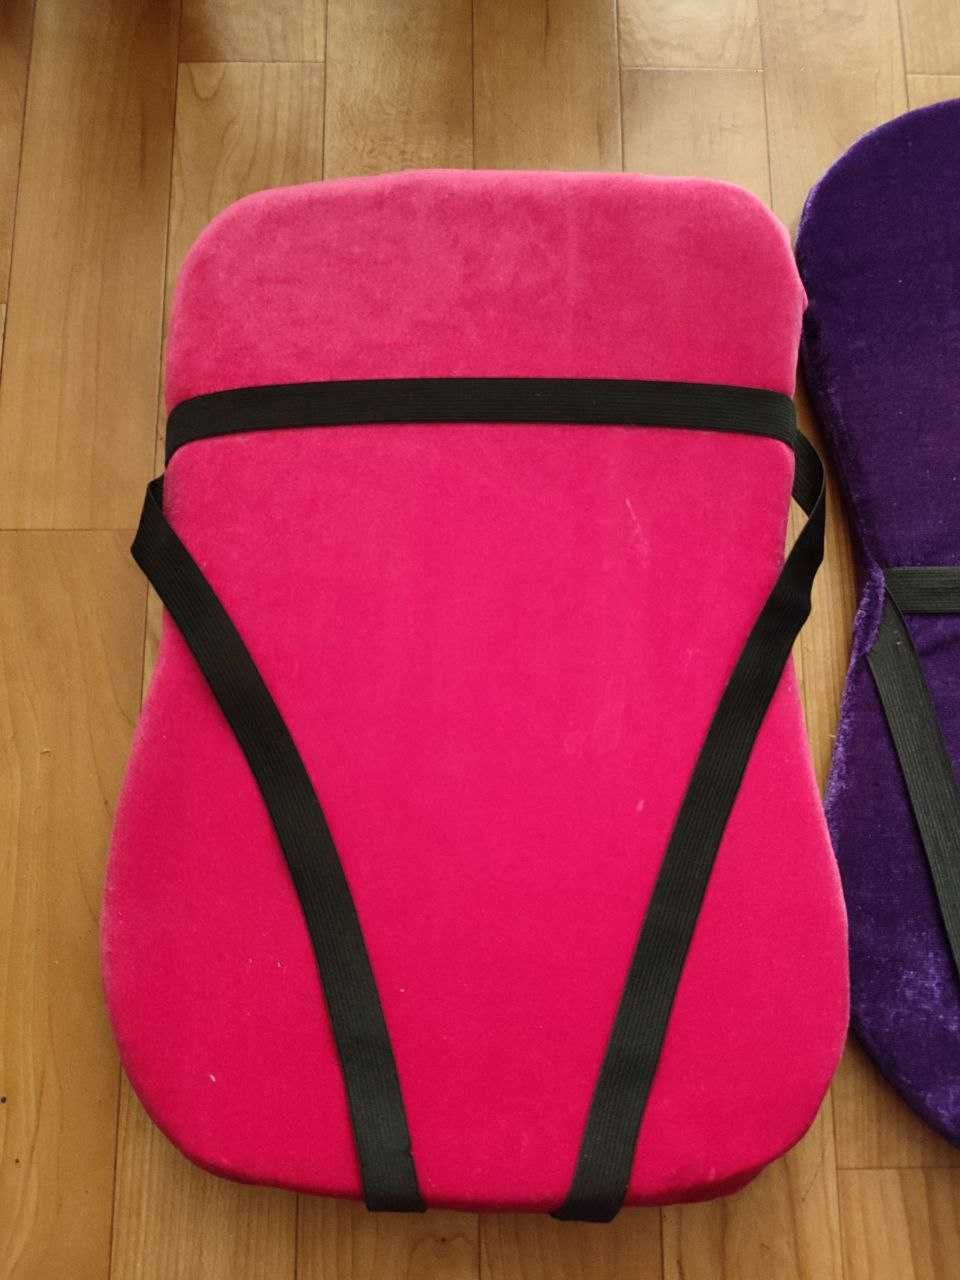 Подушка для спины гимнастическая (матрасик, наспинник)  велюровый